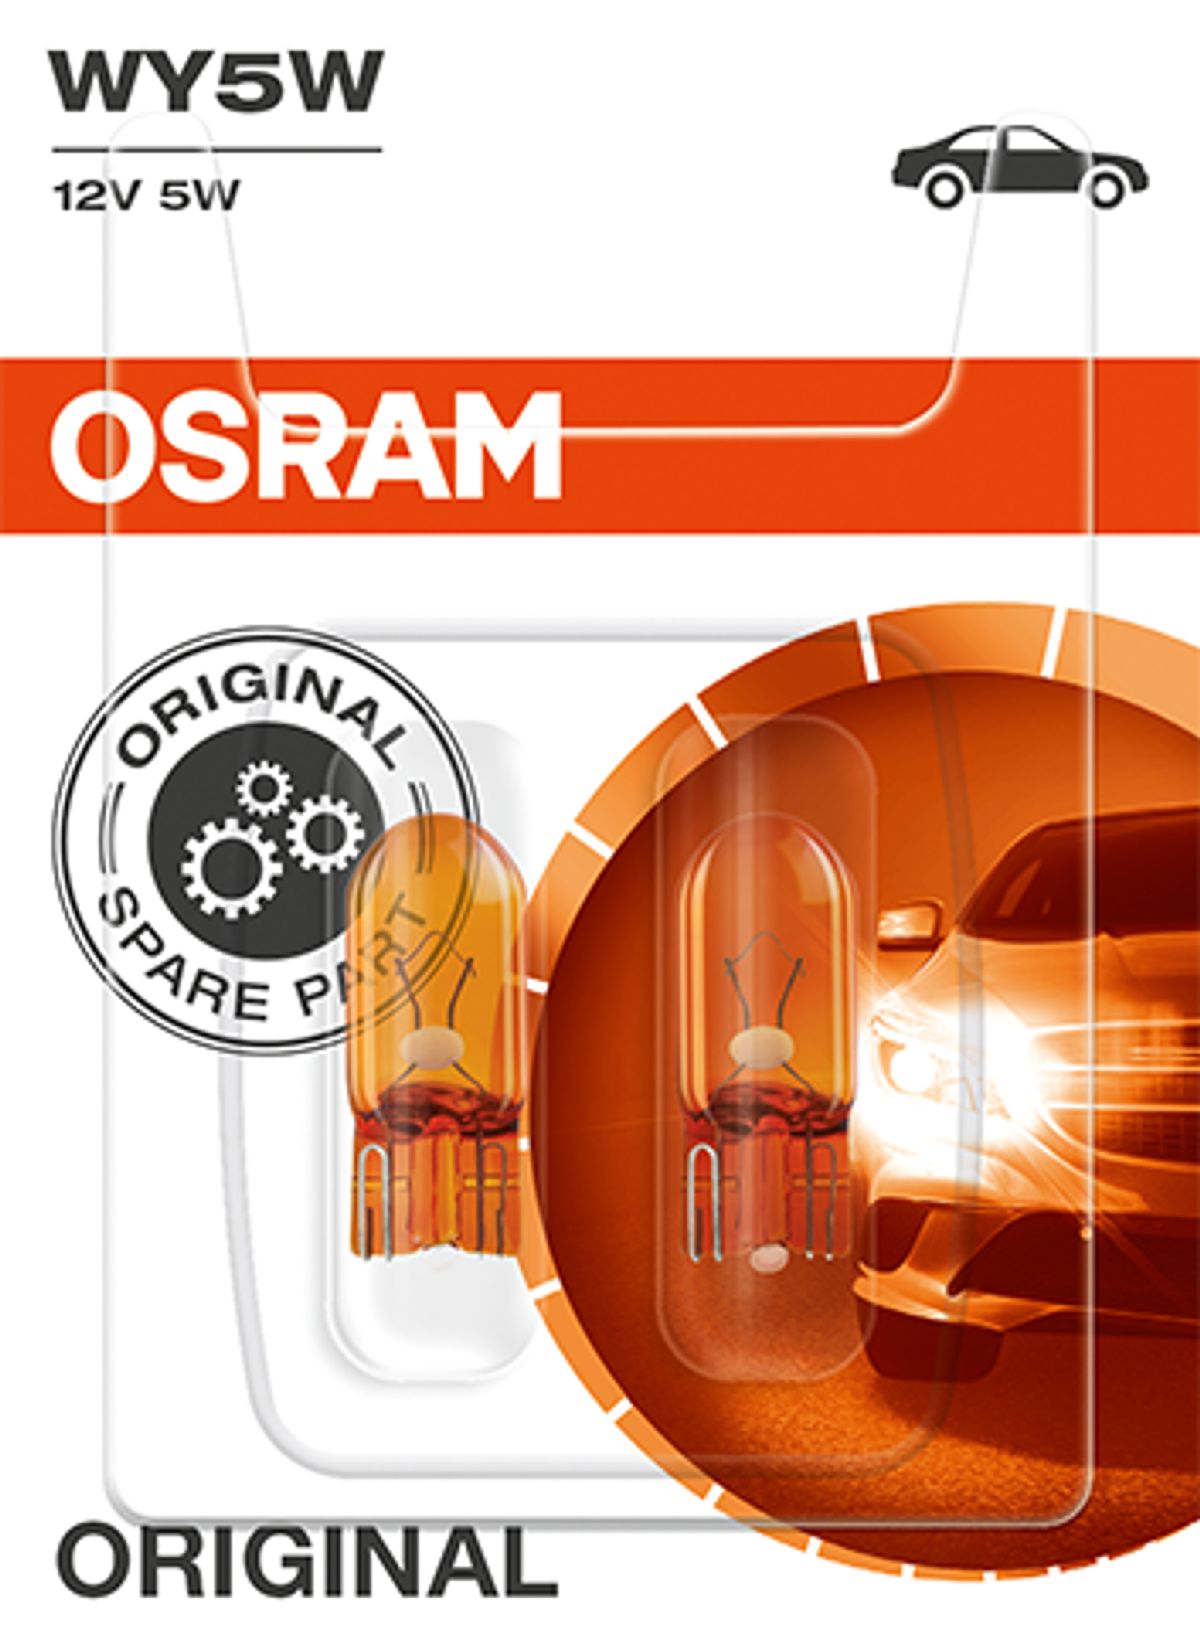 OSRAM Lampenfassungen - 64210DA04 